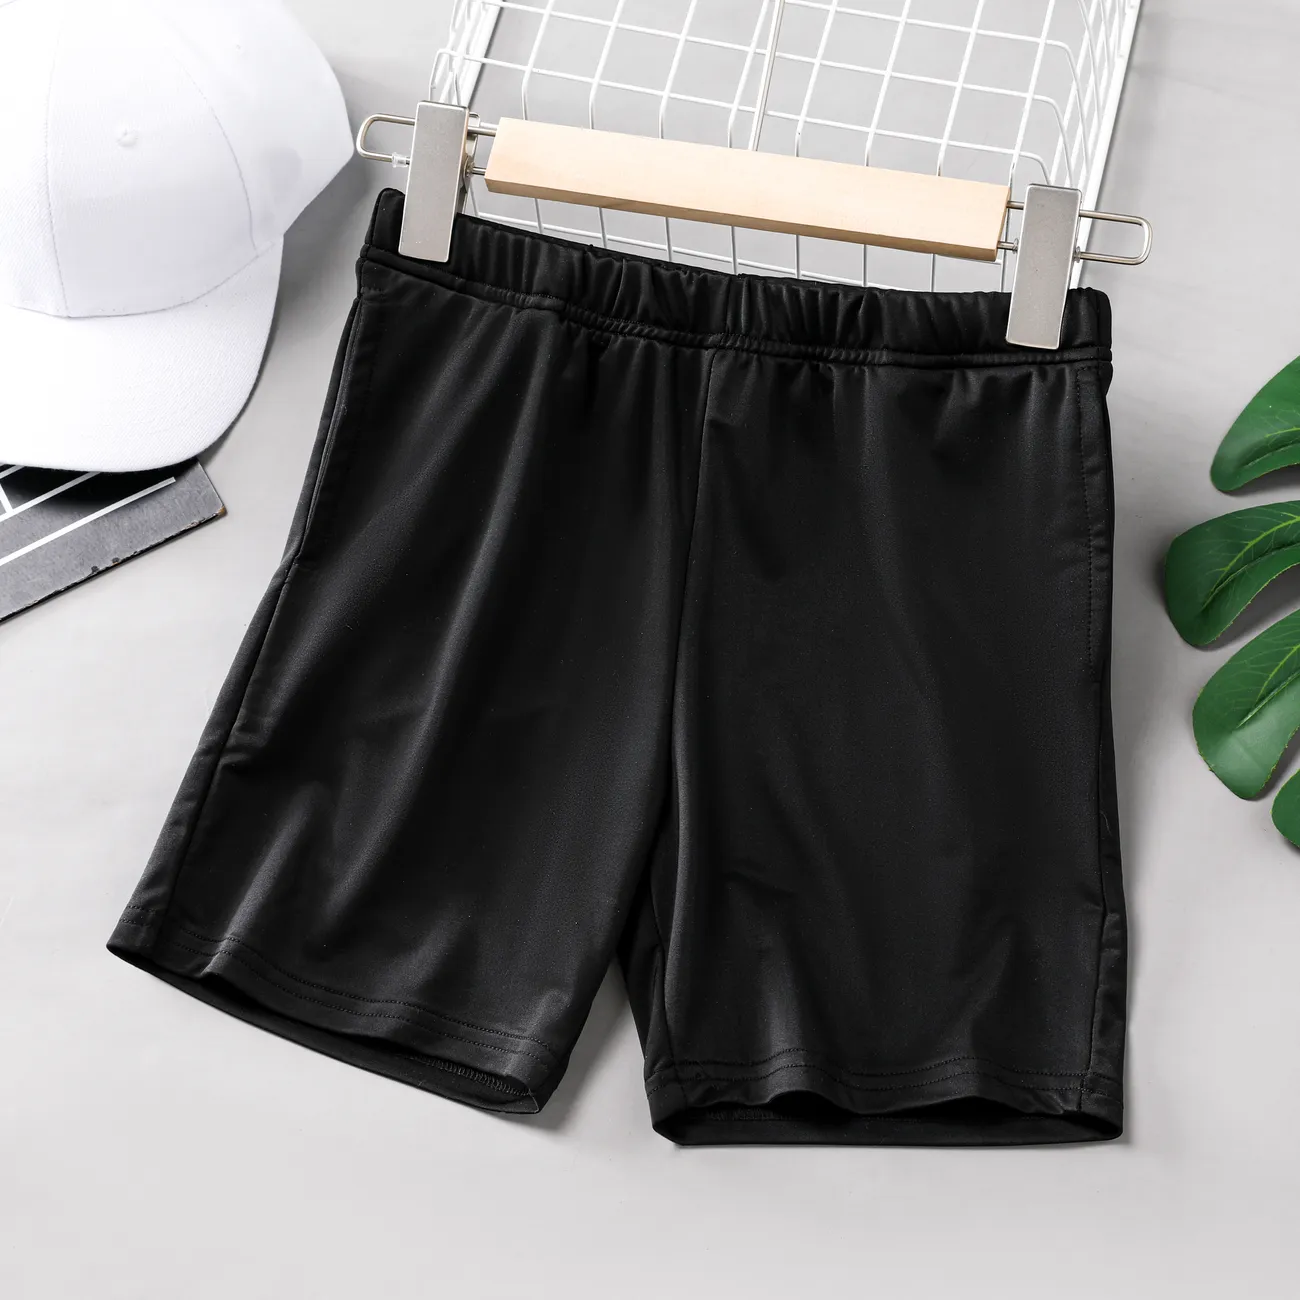 Pantalones cortos frescos de verano para niños, material de seda de hielo al 93% de poliéster Negro big image 1